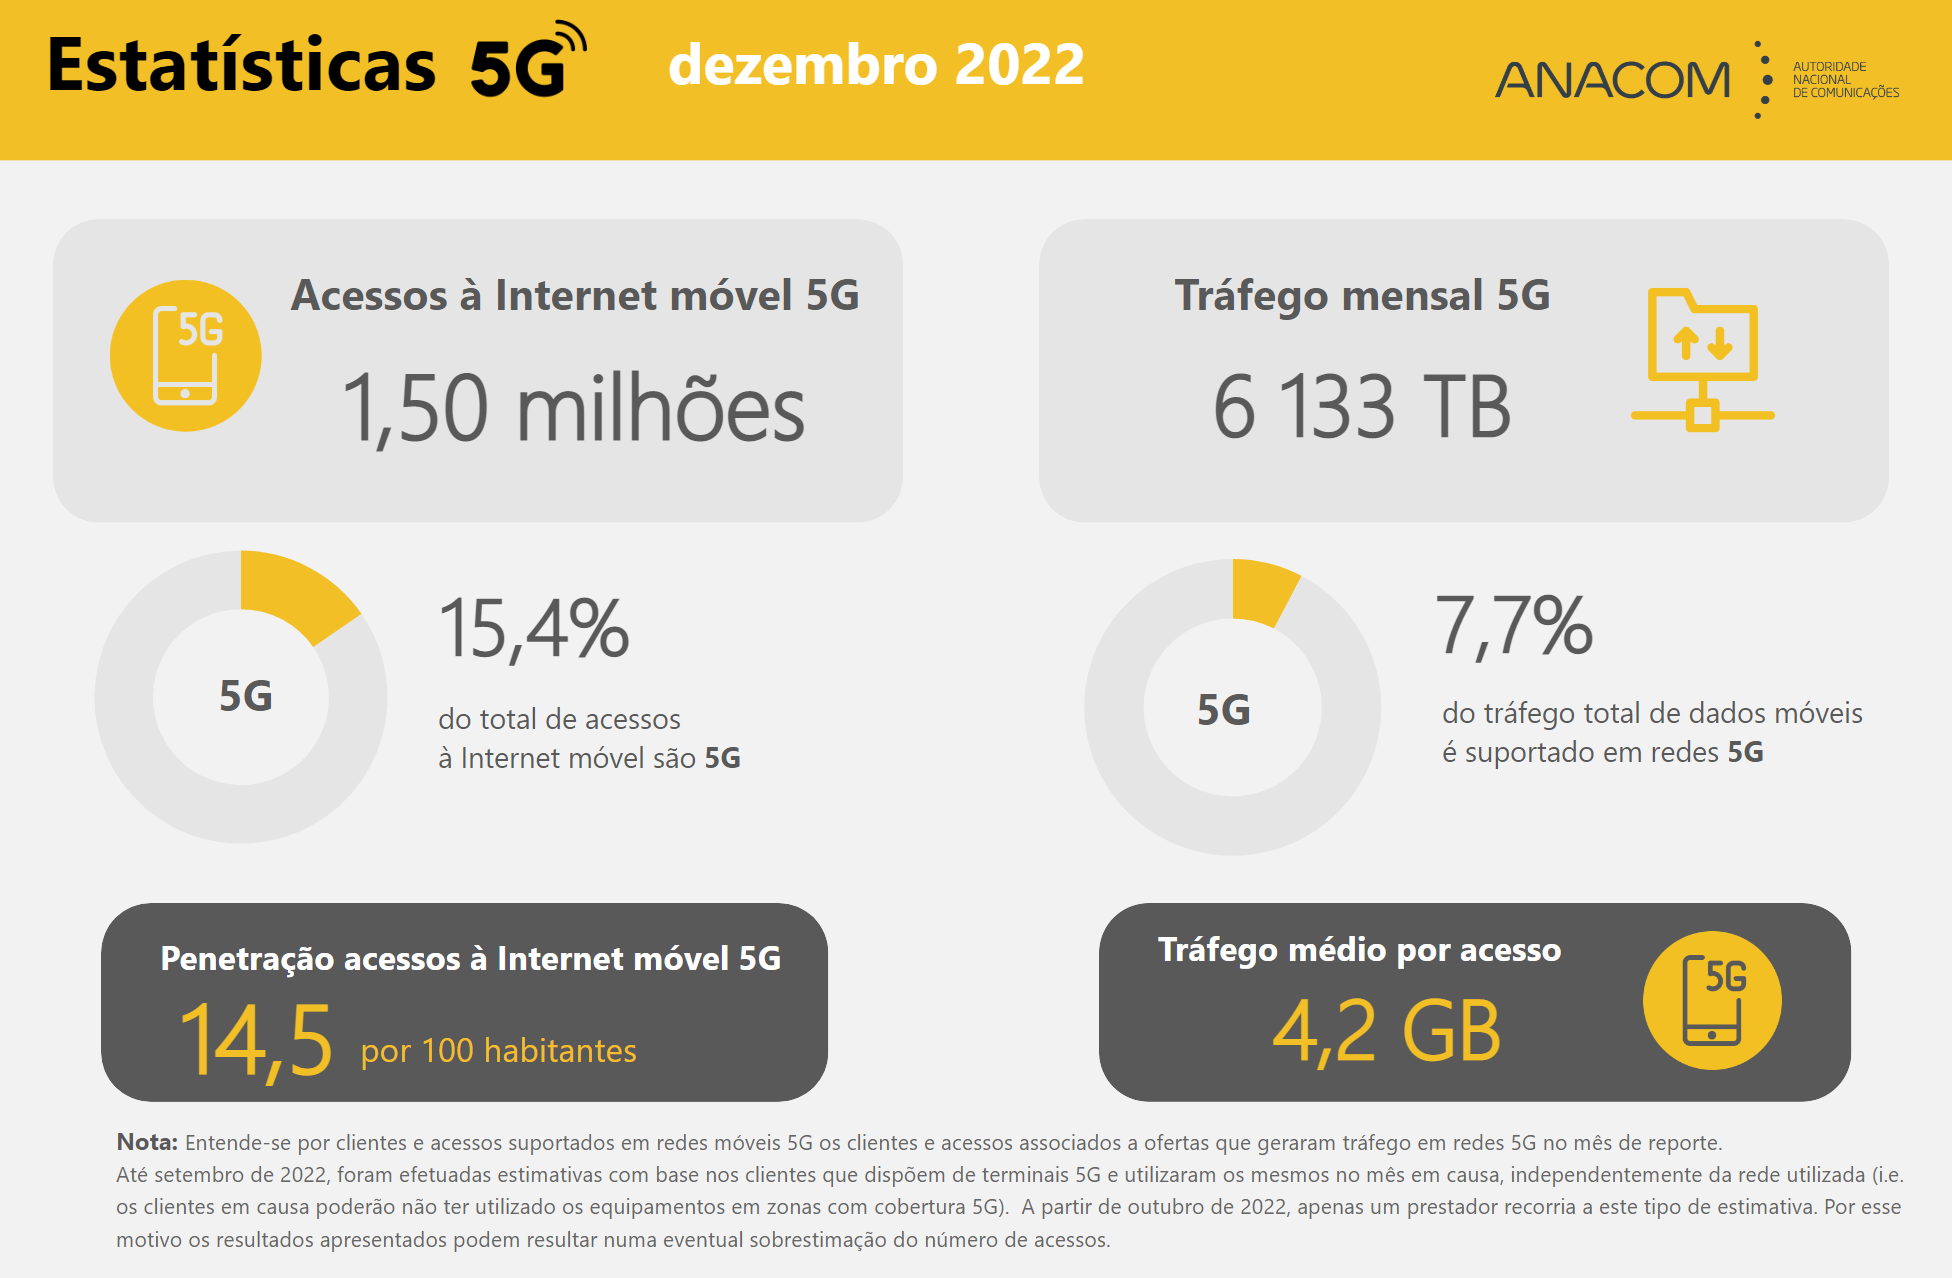 O tráfego cursado em redes 5G representava cerca de 7,7% do total de tráfego de dados móveis.